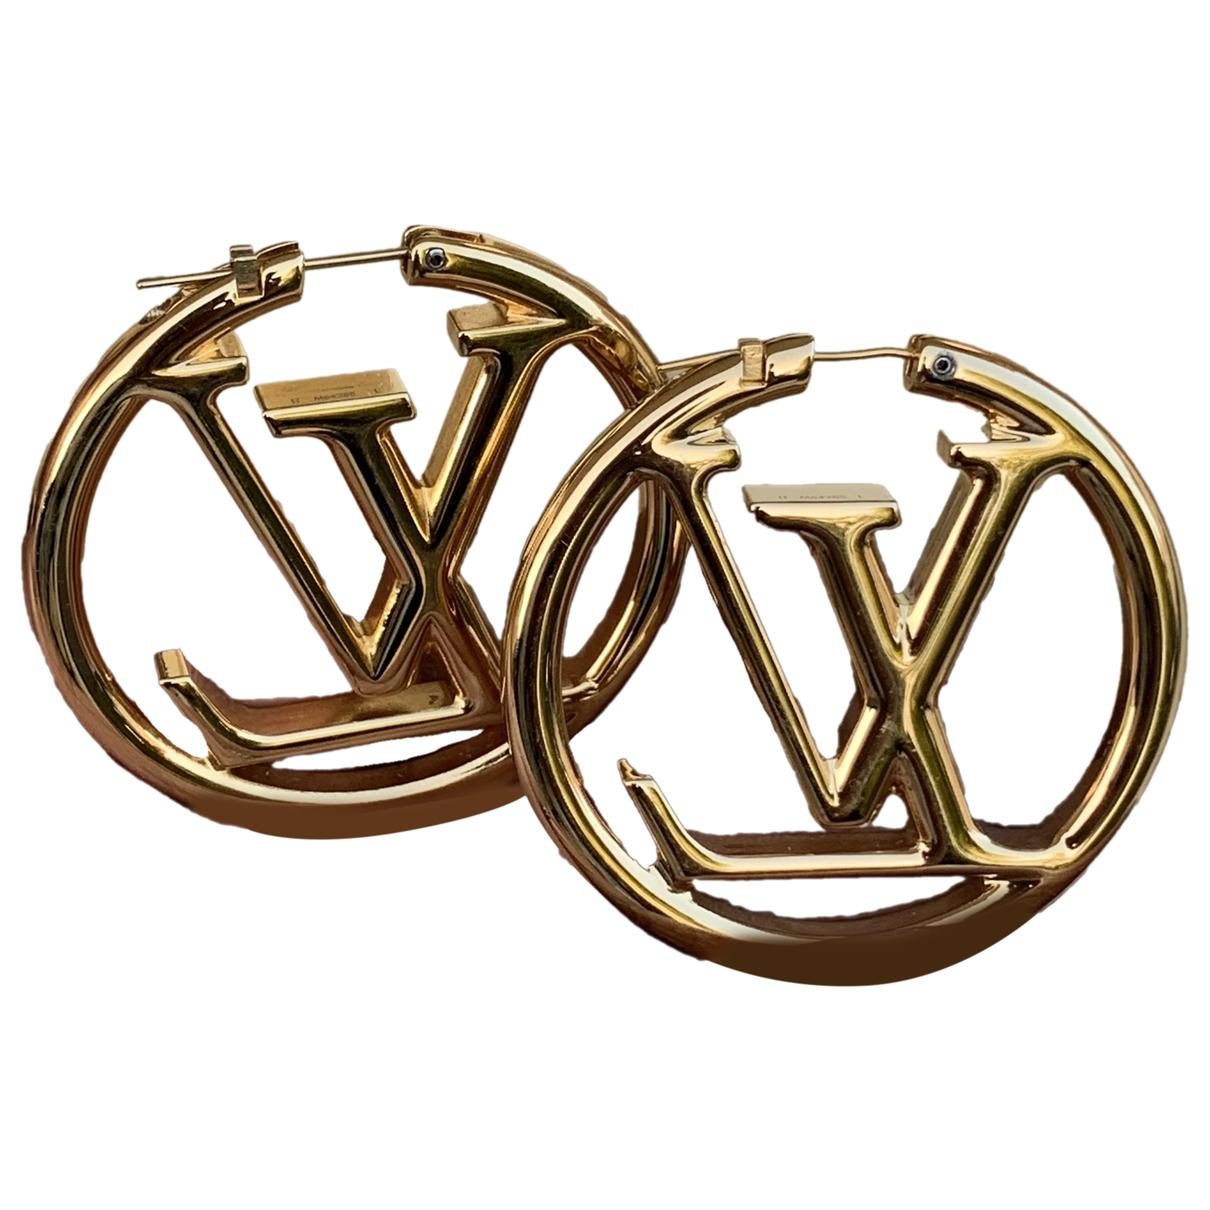 Louise earrings Louis Vuitton Gold in Steel - 36751820